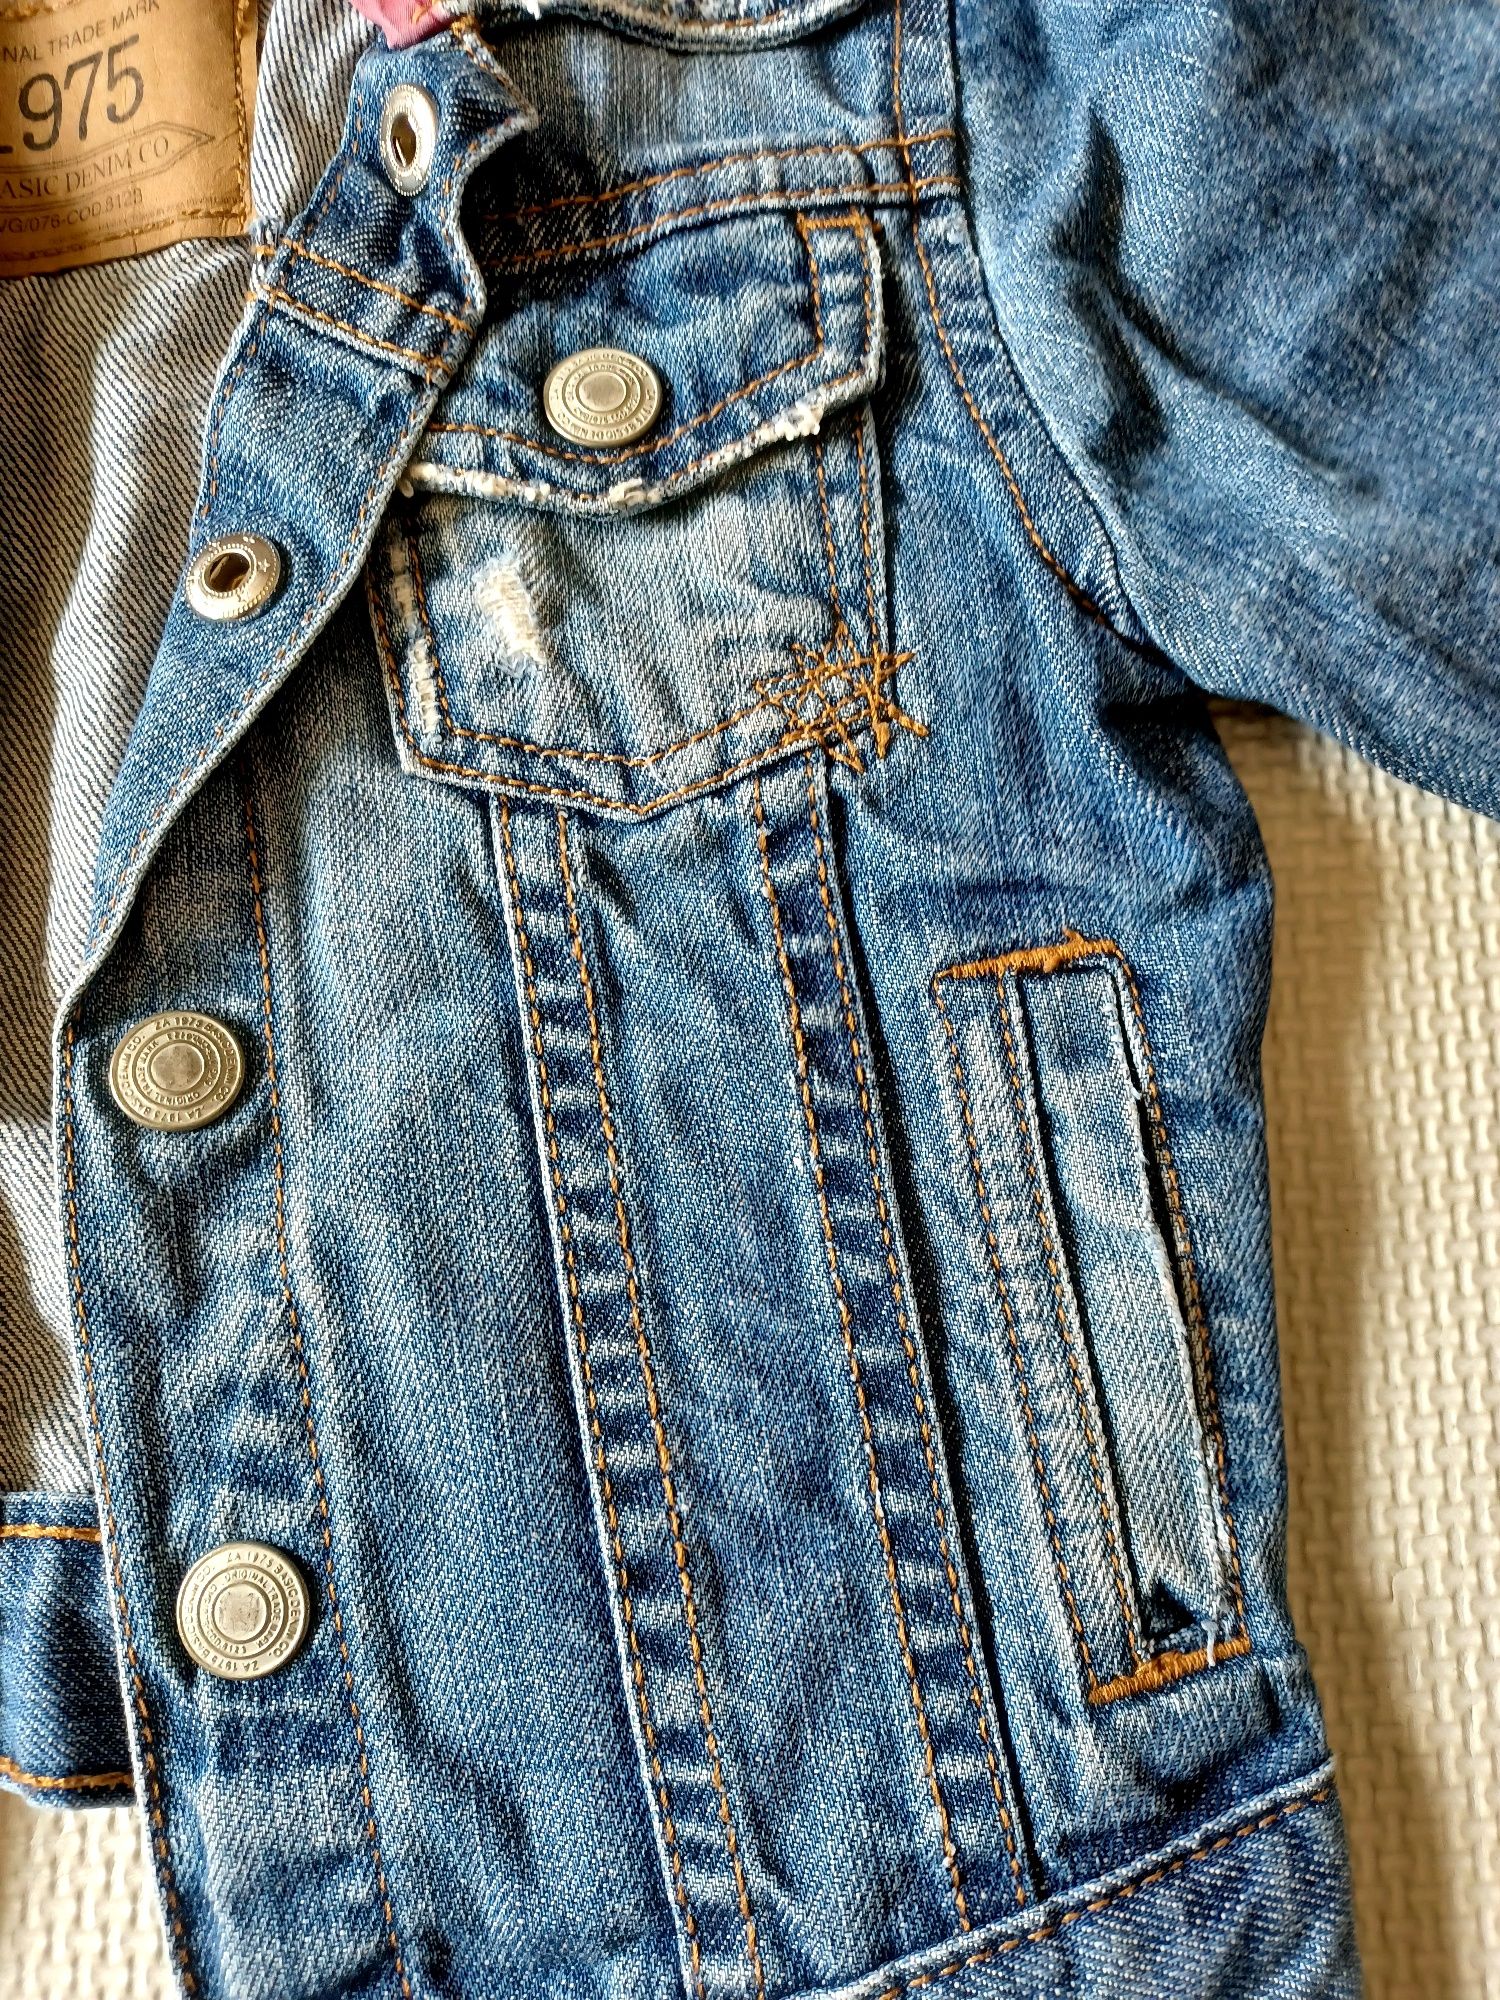 Kurtka jeansowa, katana Zara rozmiar 98.